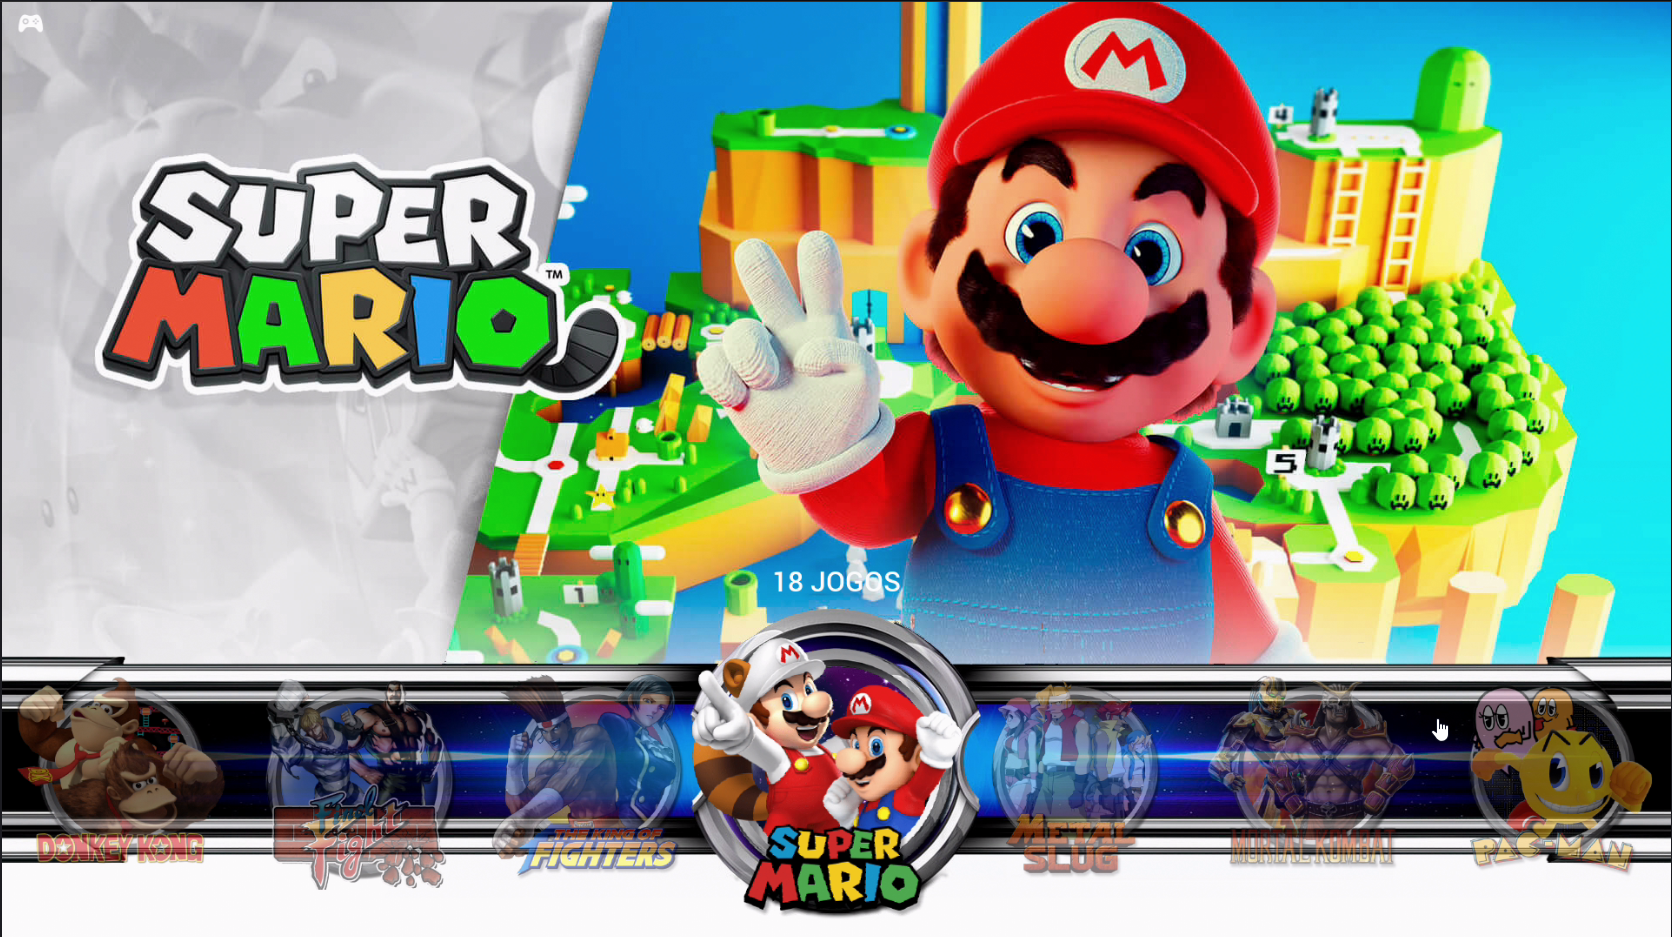 Super Game Retro Box 93 mil jogos - Super 3D Games - 2 Controles